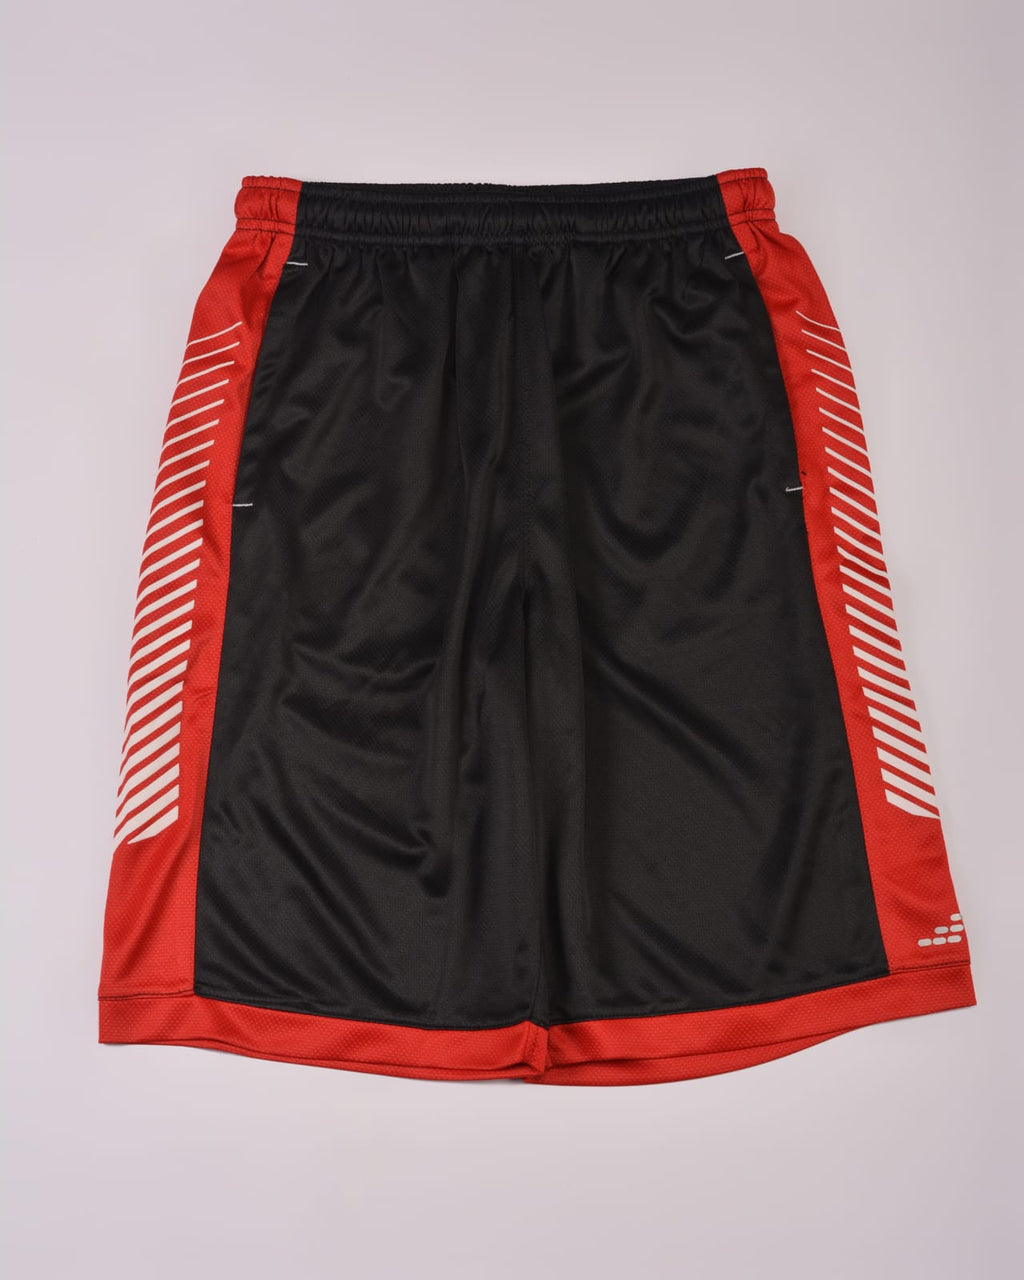 BCG Men's Mesh Basketball Short-Black/Red